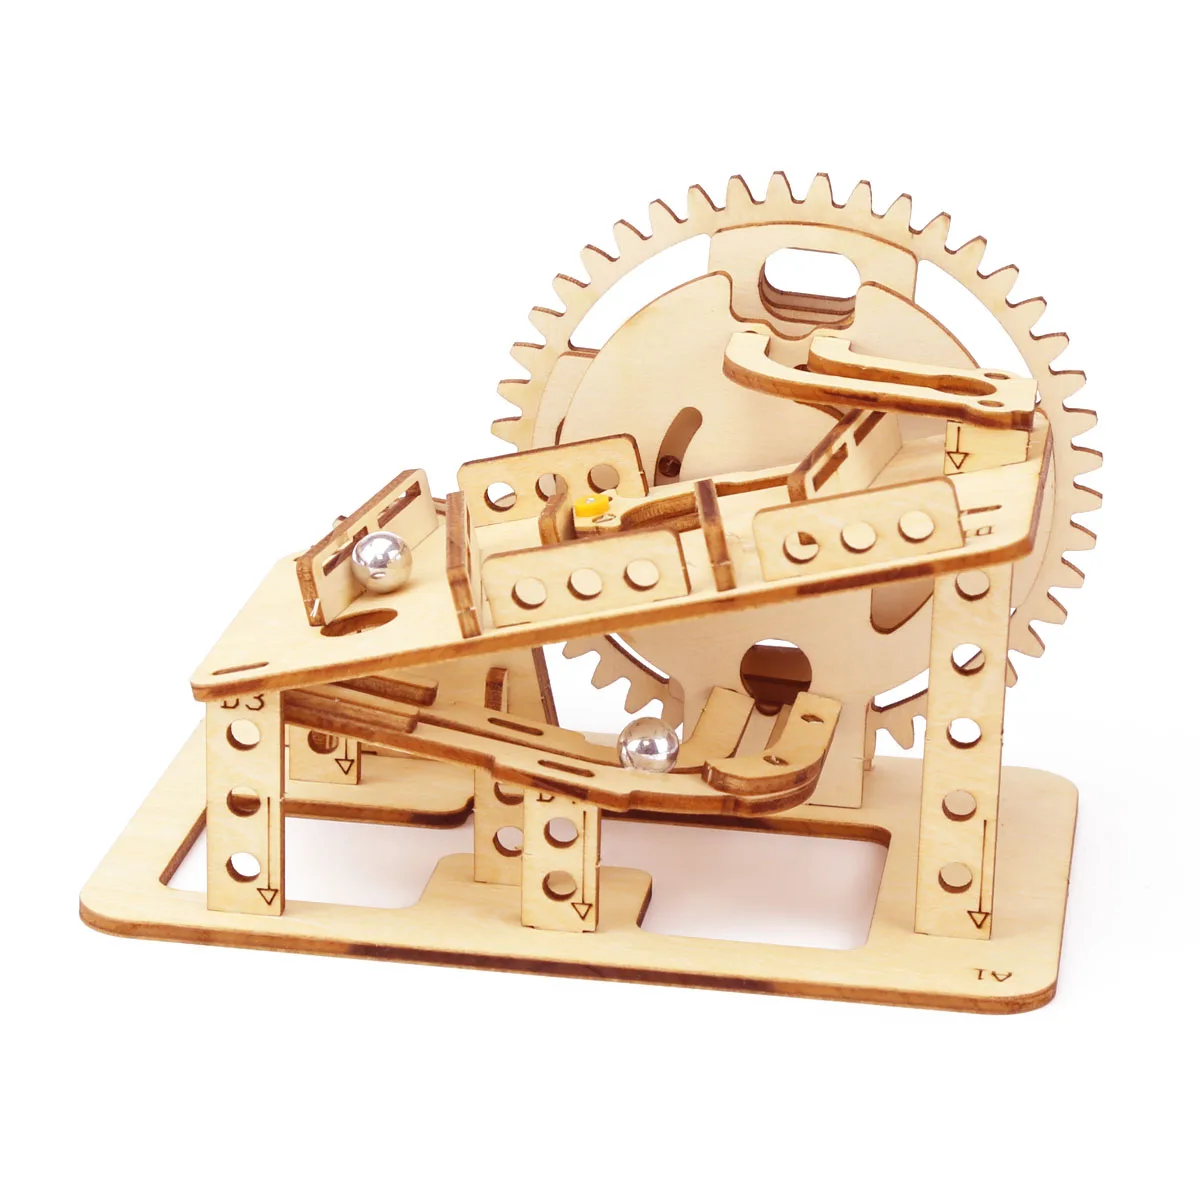 4 вида Мрамор забе 3D деревянные головоломки механические Комплект Стволовых